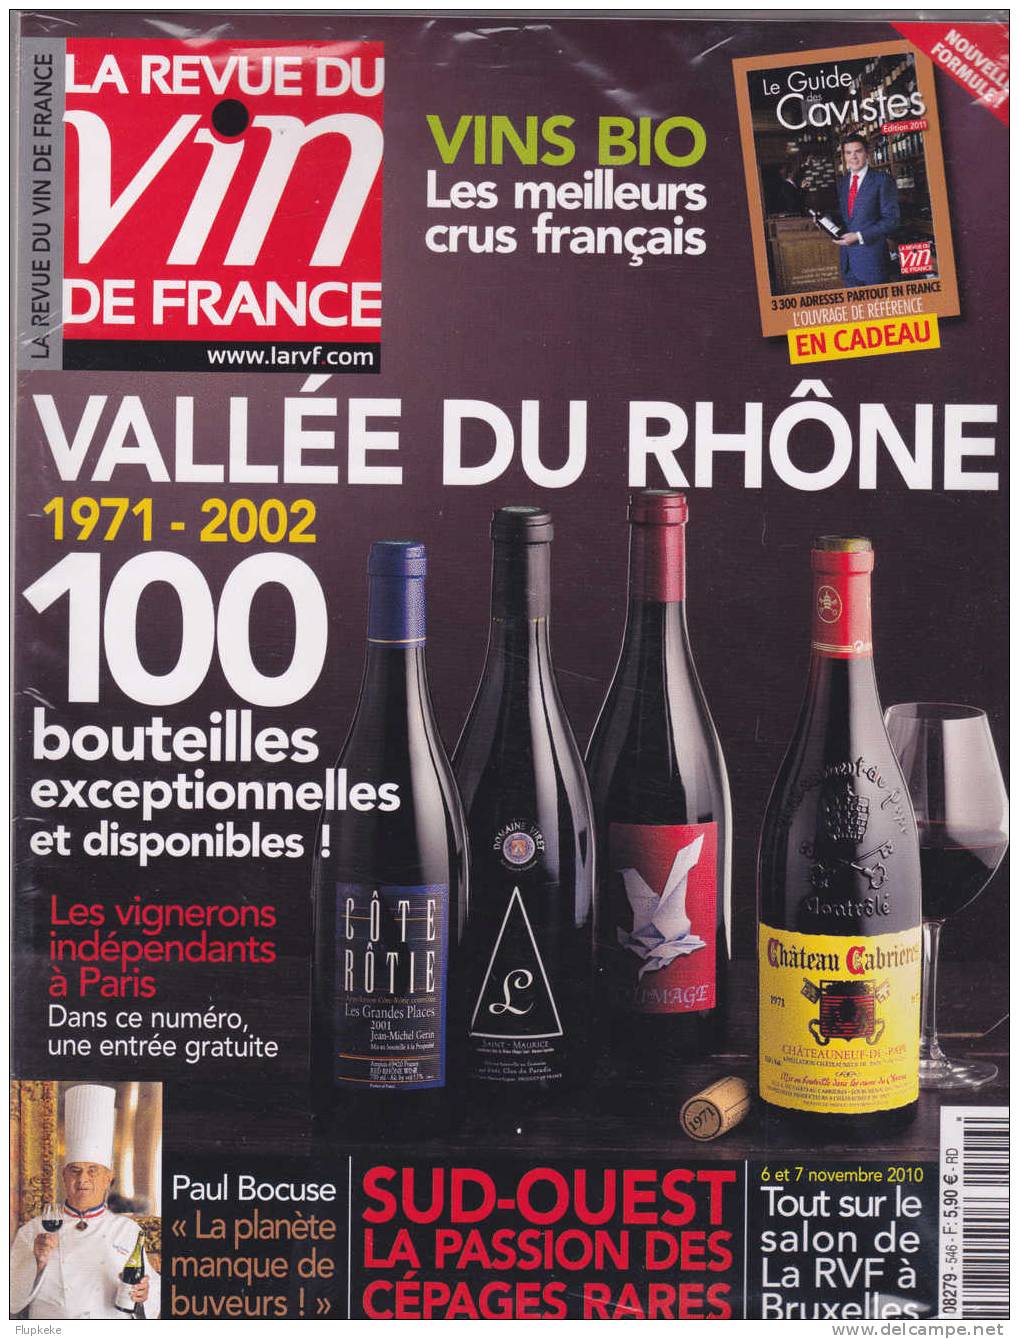 La Revue Du Vin De France 546 Novembre 2010 Vallée Du Rhône 1971-2002 + Guide Des Cavistes Édition 2011 - Cooking & Wines